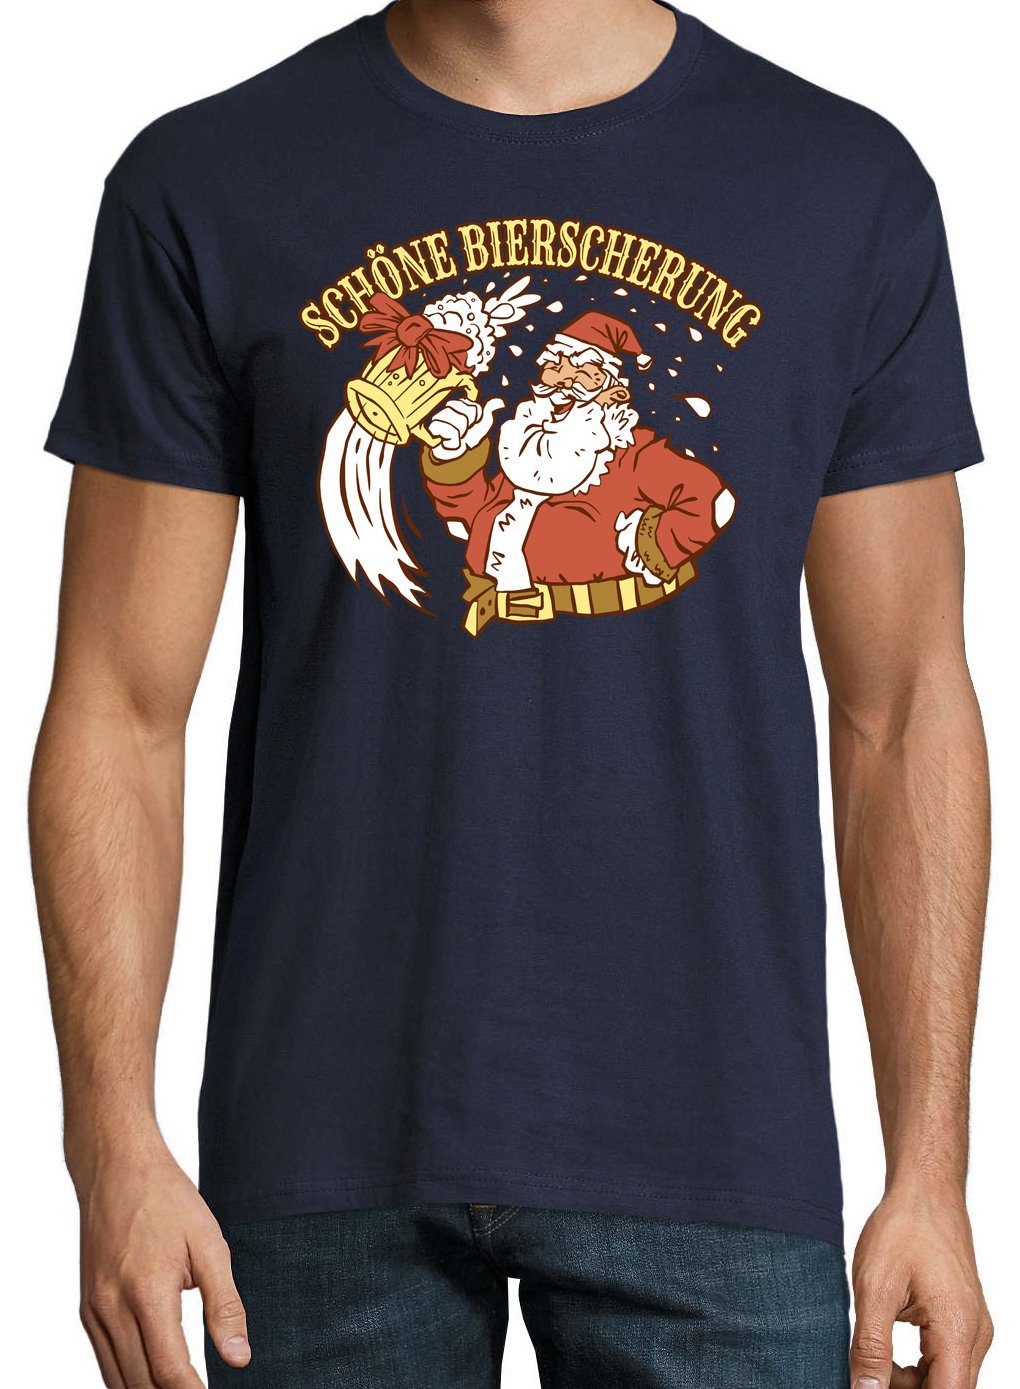 Youth Designz T-Shirt "Schöne Bierscherung" mit Herren Frontprint Navyblau trendigem Shirt